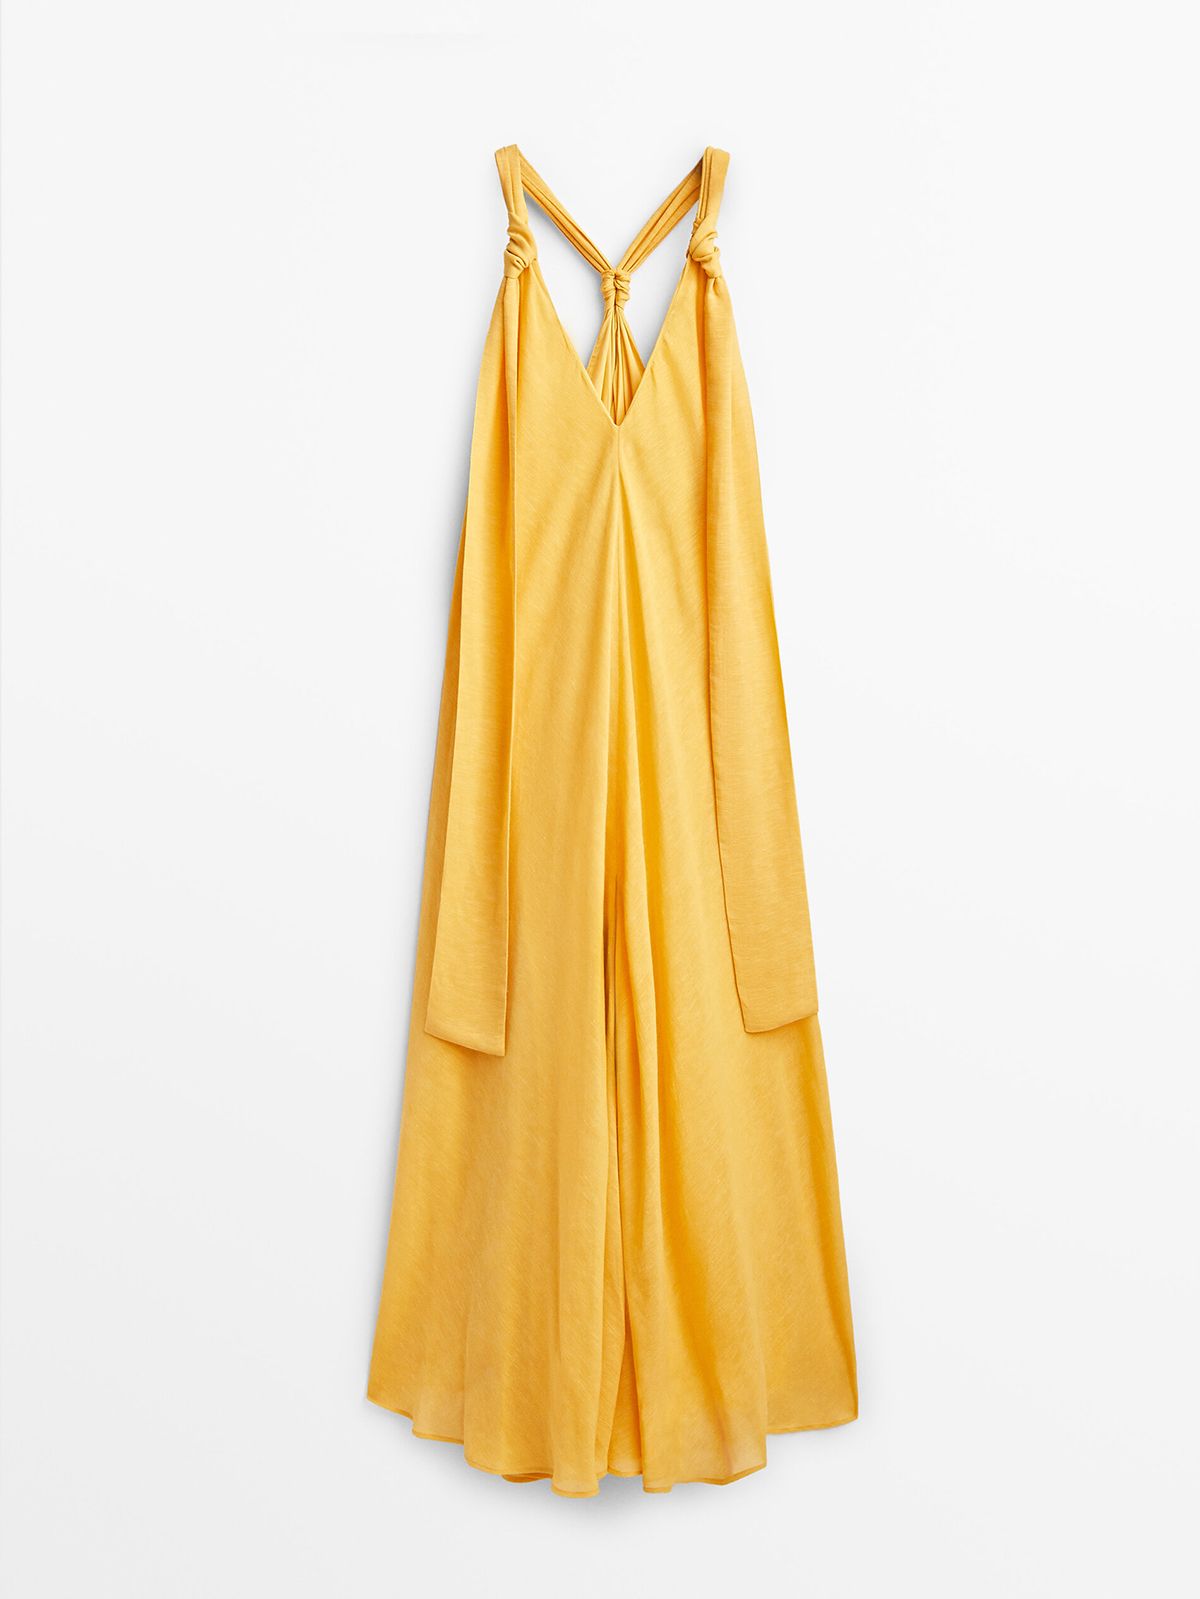 El vestido de Massimo Dutti que nos hace soñar con el verano.